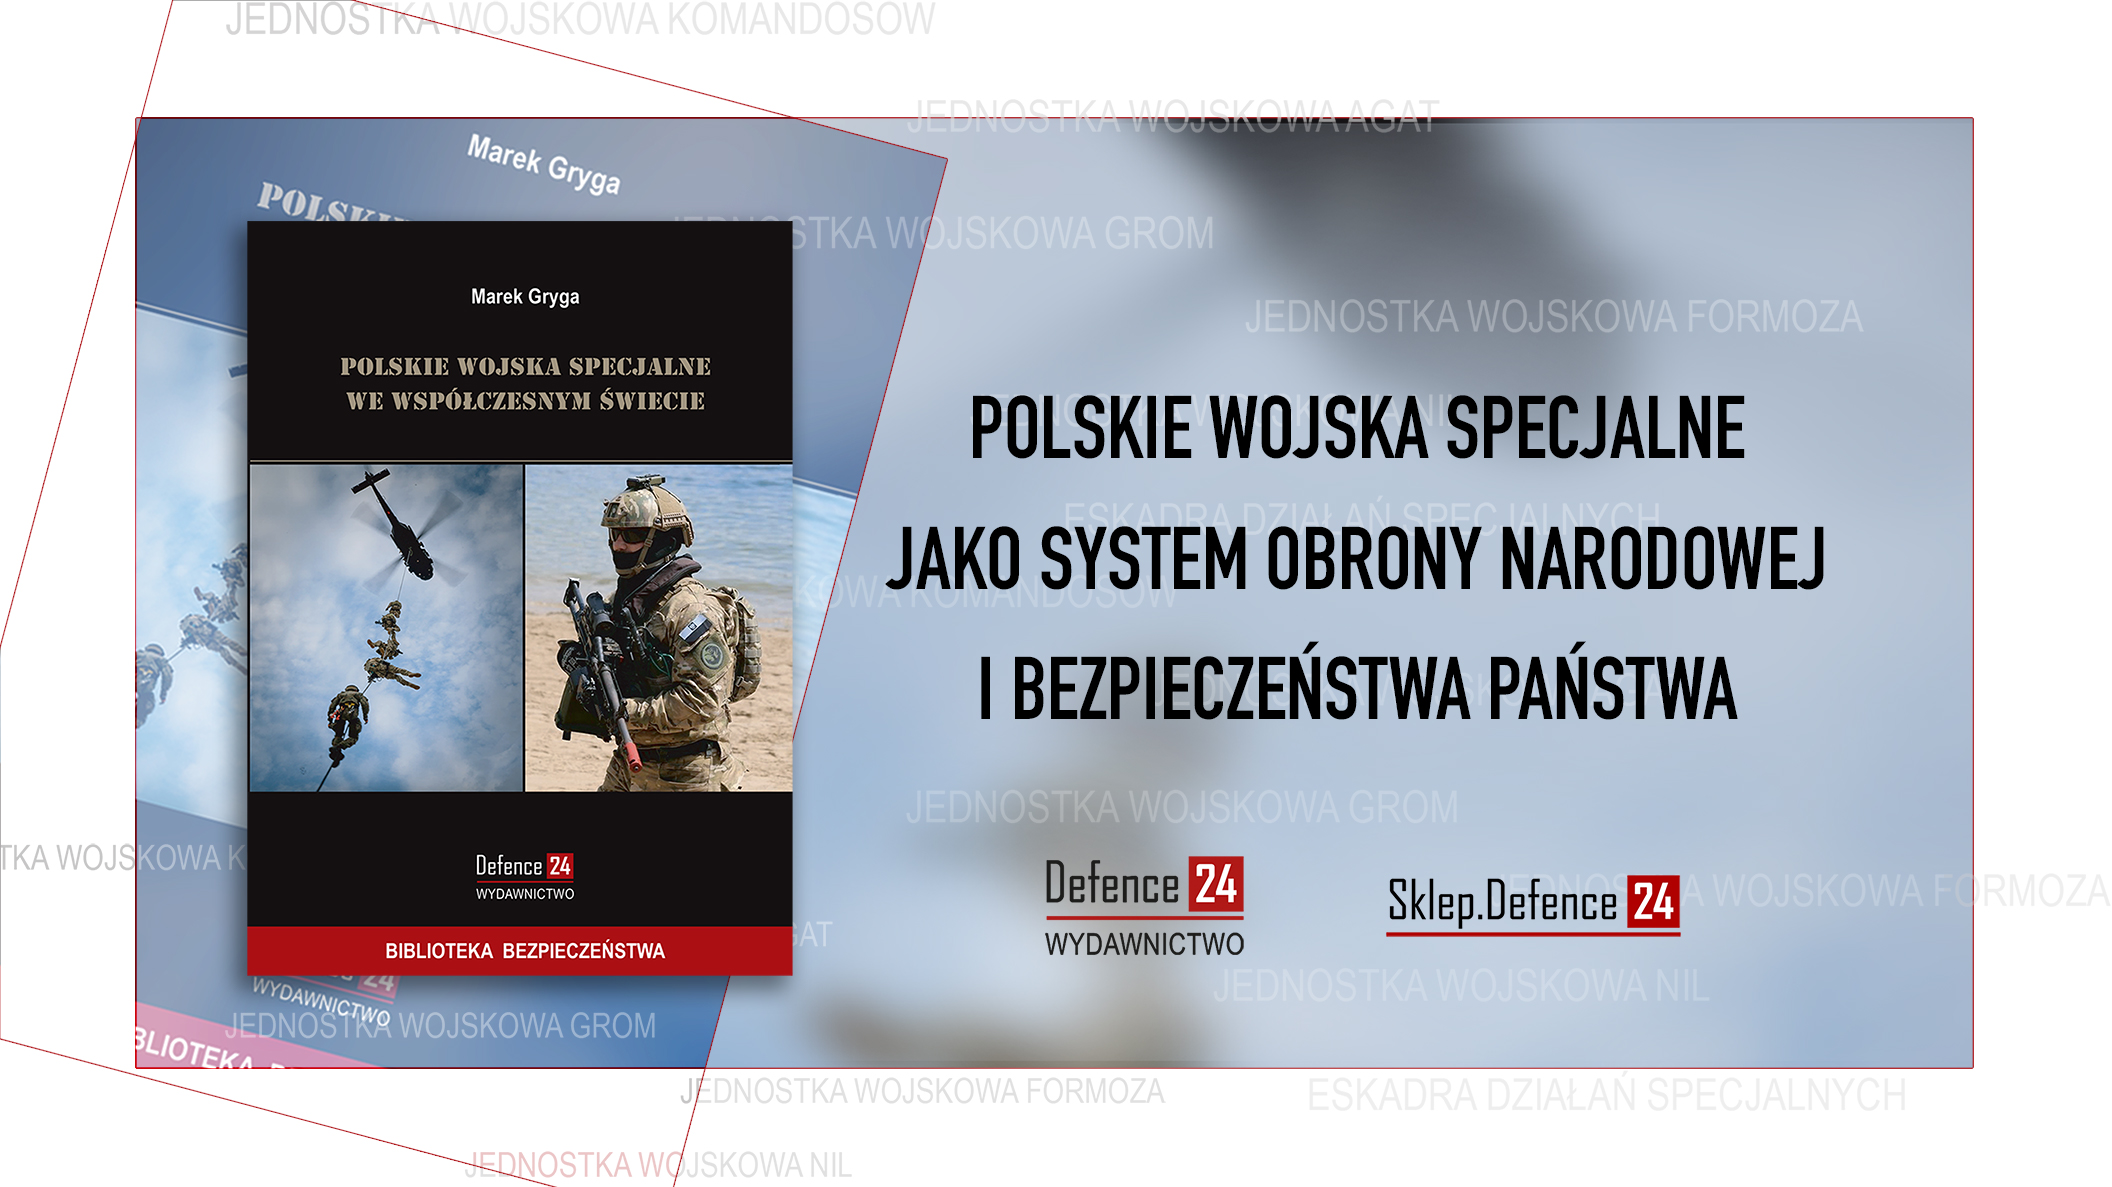 Reklama
Link: https://sklep.defence24.pl/produkt/polskie-wojska-specjalne-we-wspolczesnym-swiecie/